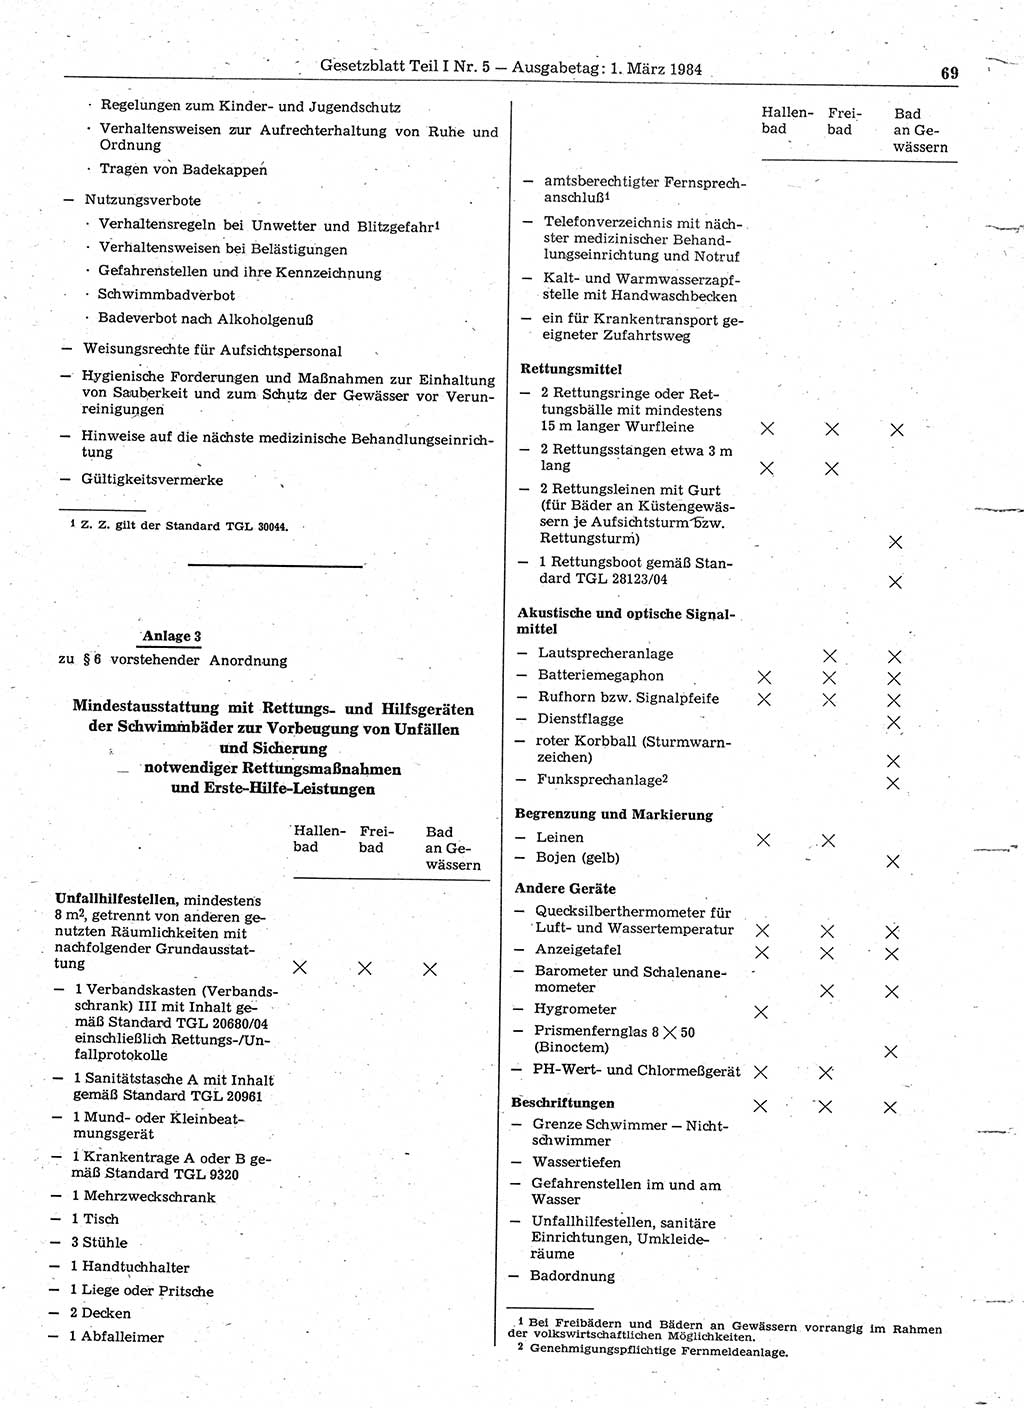 Gesetzblatt (GBl.) der Deutschen Demokratischen Republik (DDR) Teil Ⅰ 1984, Seite 69 (GBl. DDR Ⅰ 1984, S. 69)